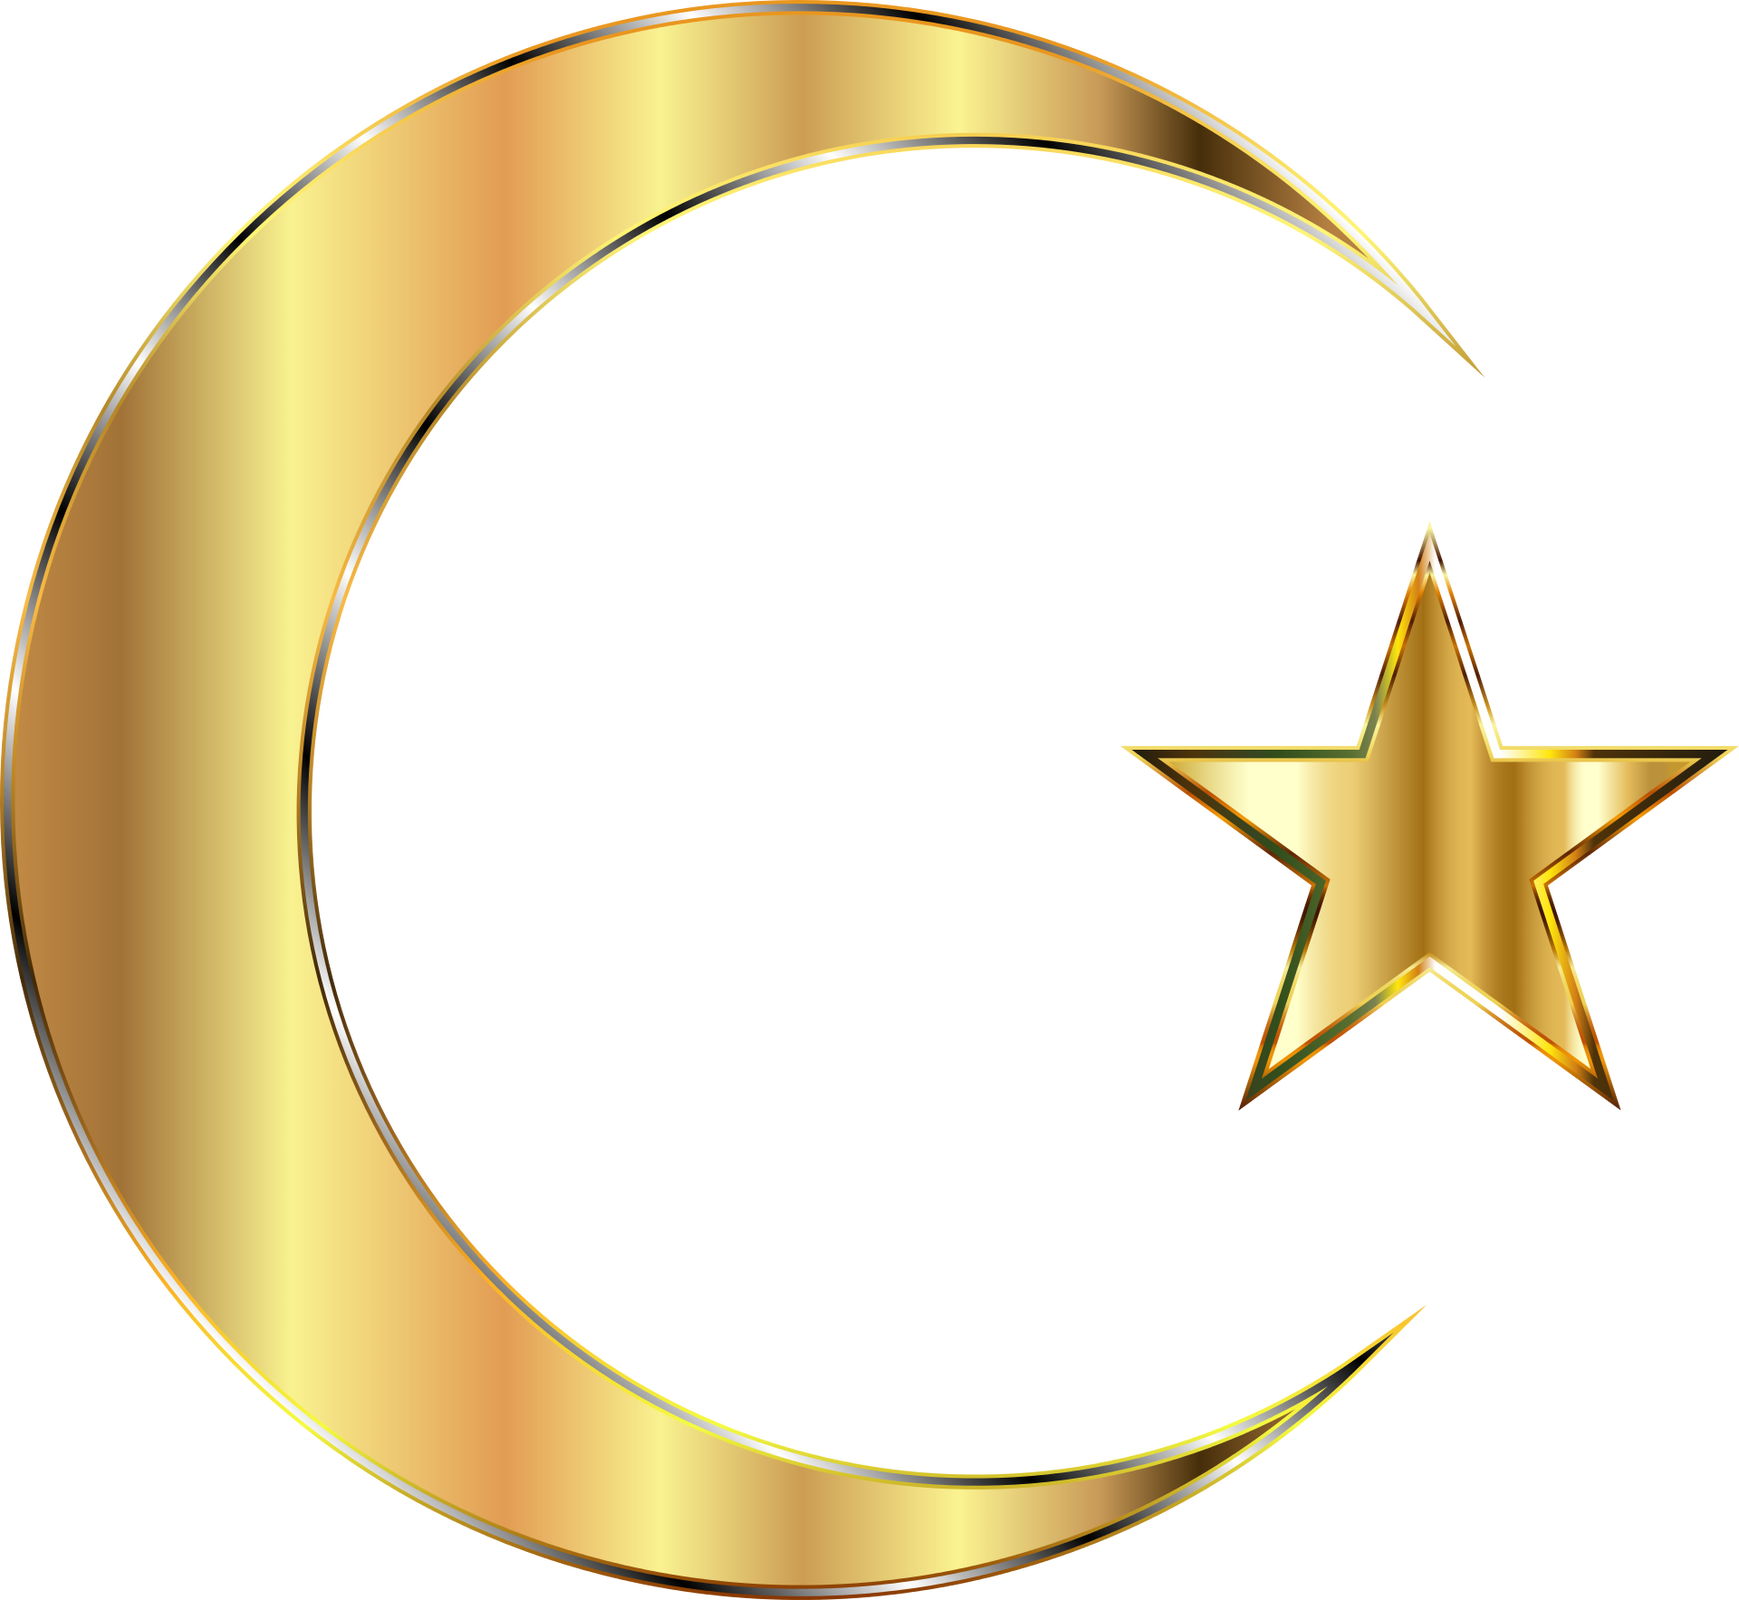 Zdjęcie przedstawia symbol islamu. Obok sierpu księżyca, z prawej strony umiejscowiona jest pięcioramienna gwiazda. 